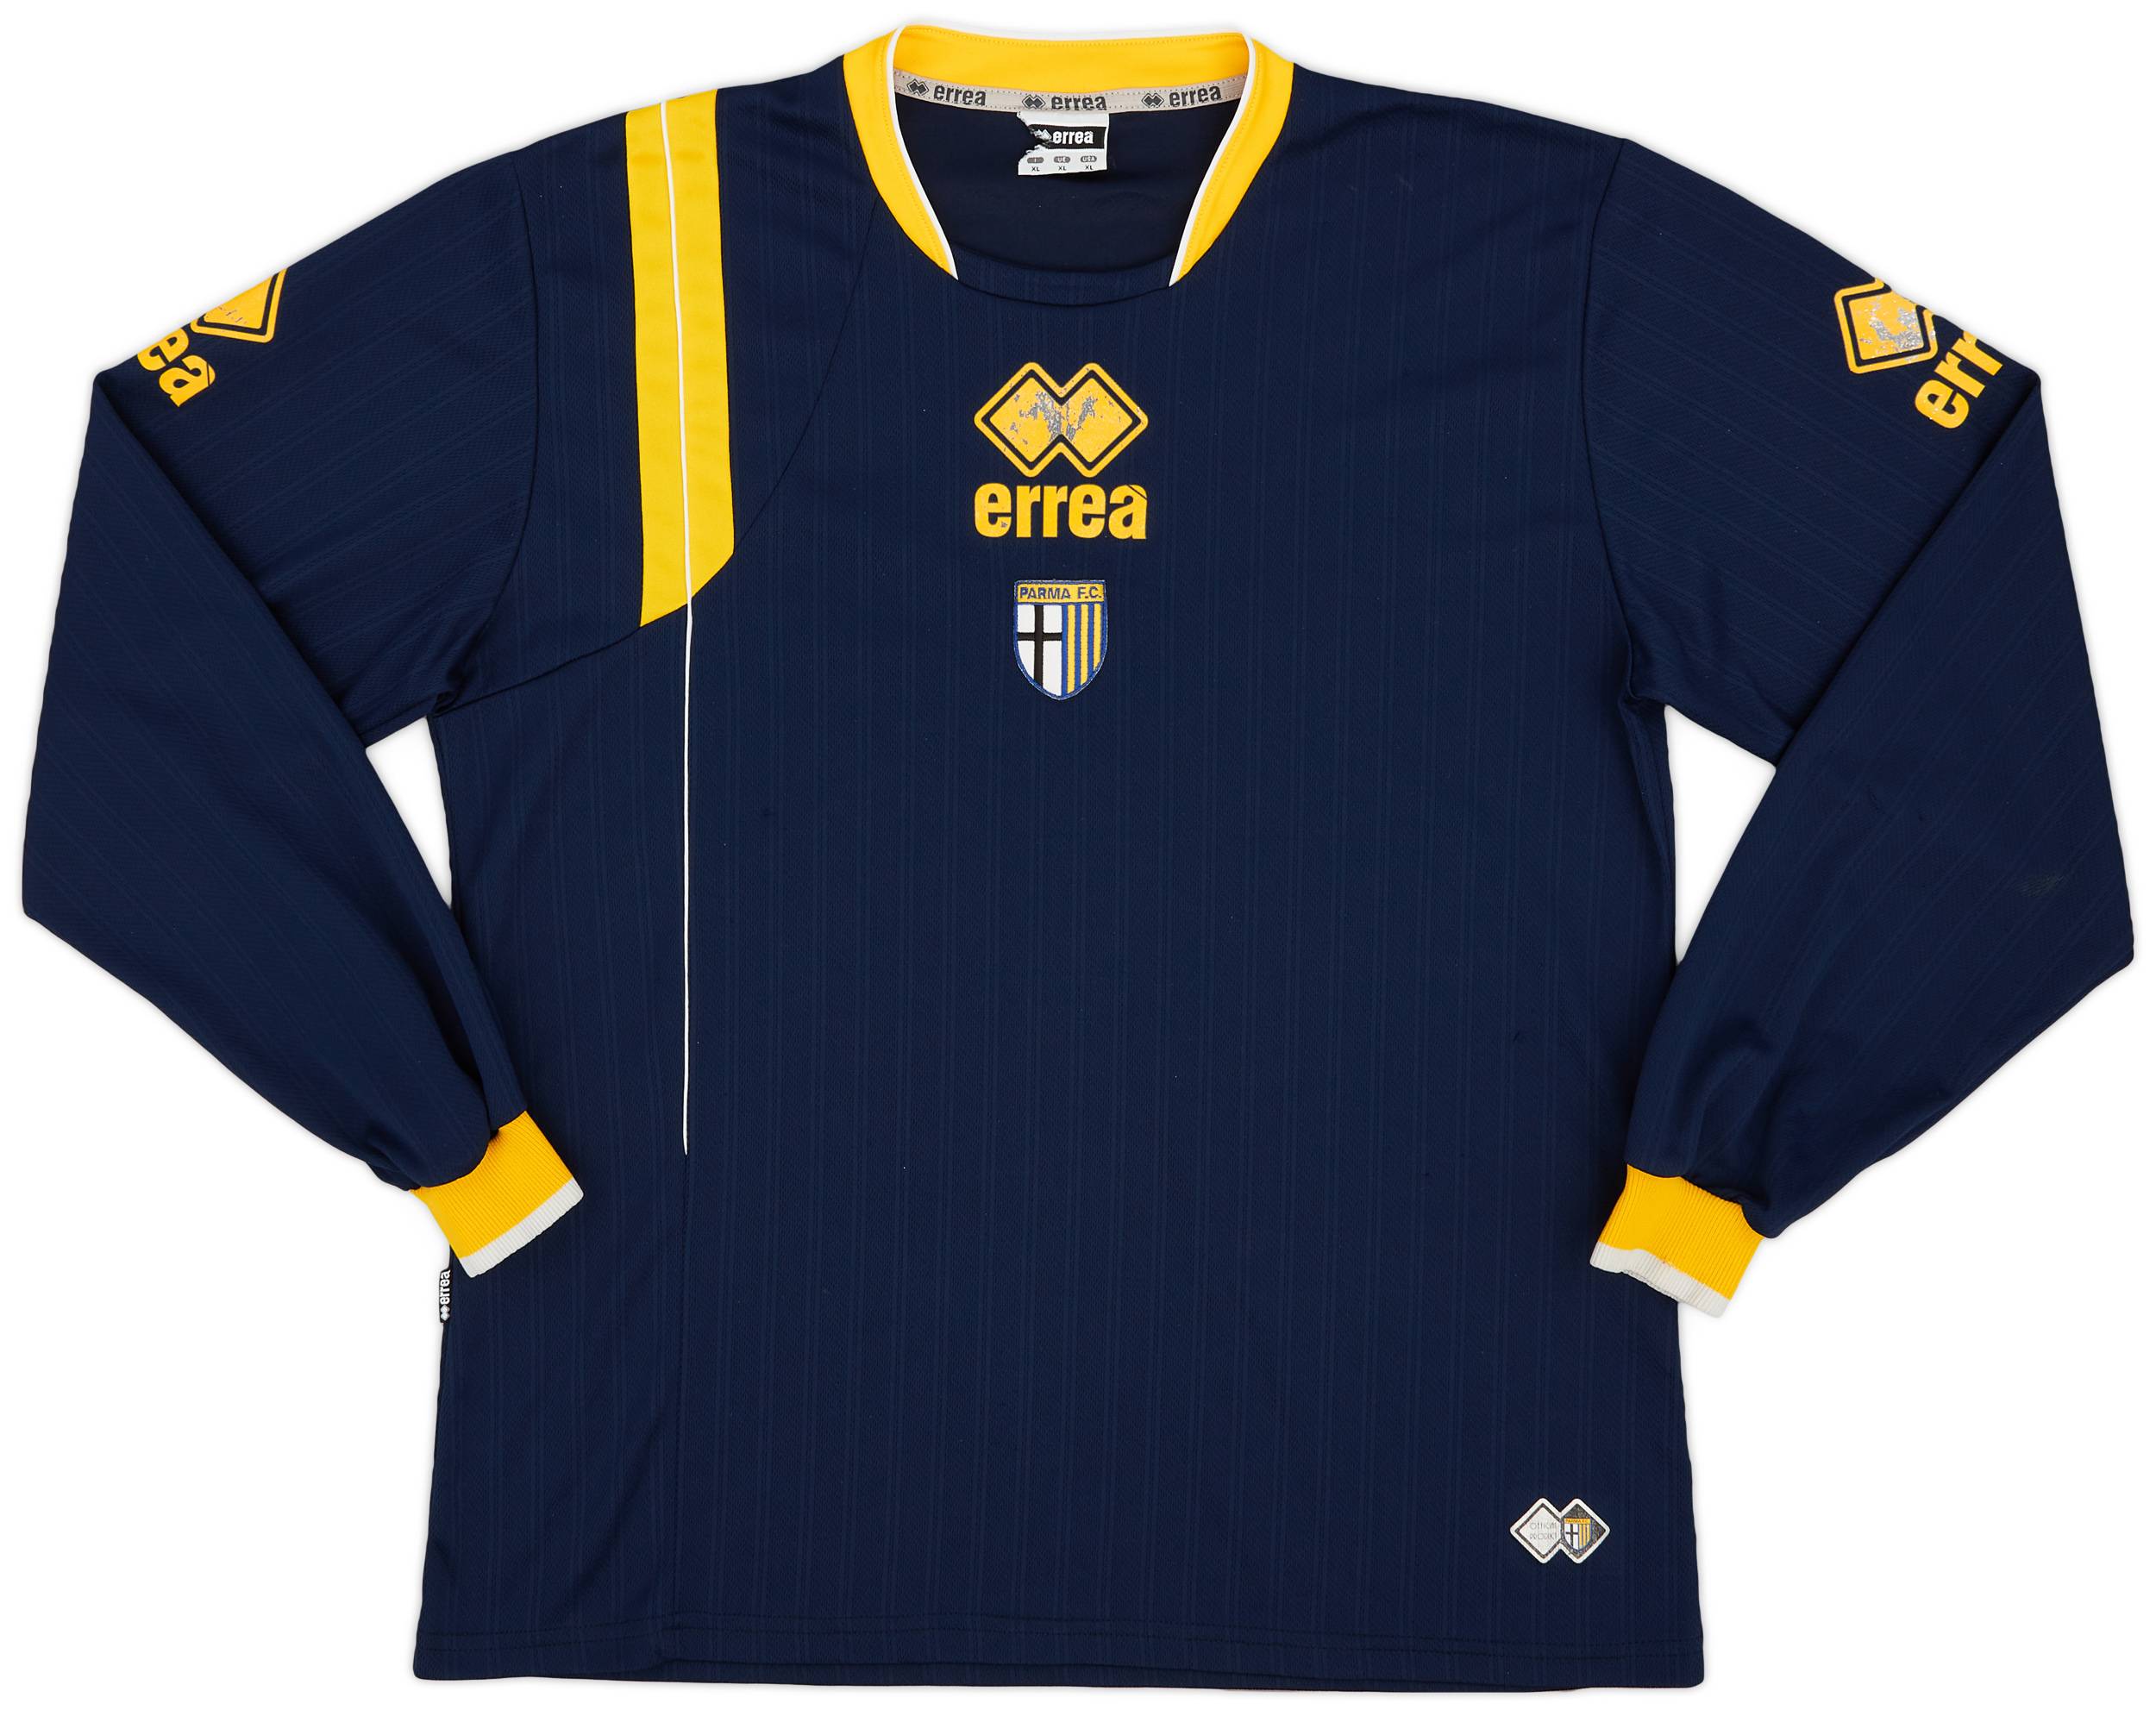 2010-11 Parma Errea Training L/S Shirt - 7/10 - (XL)